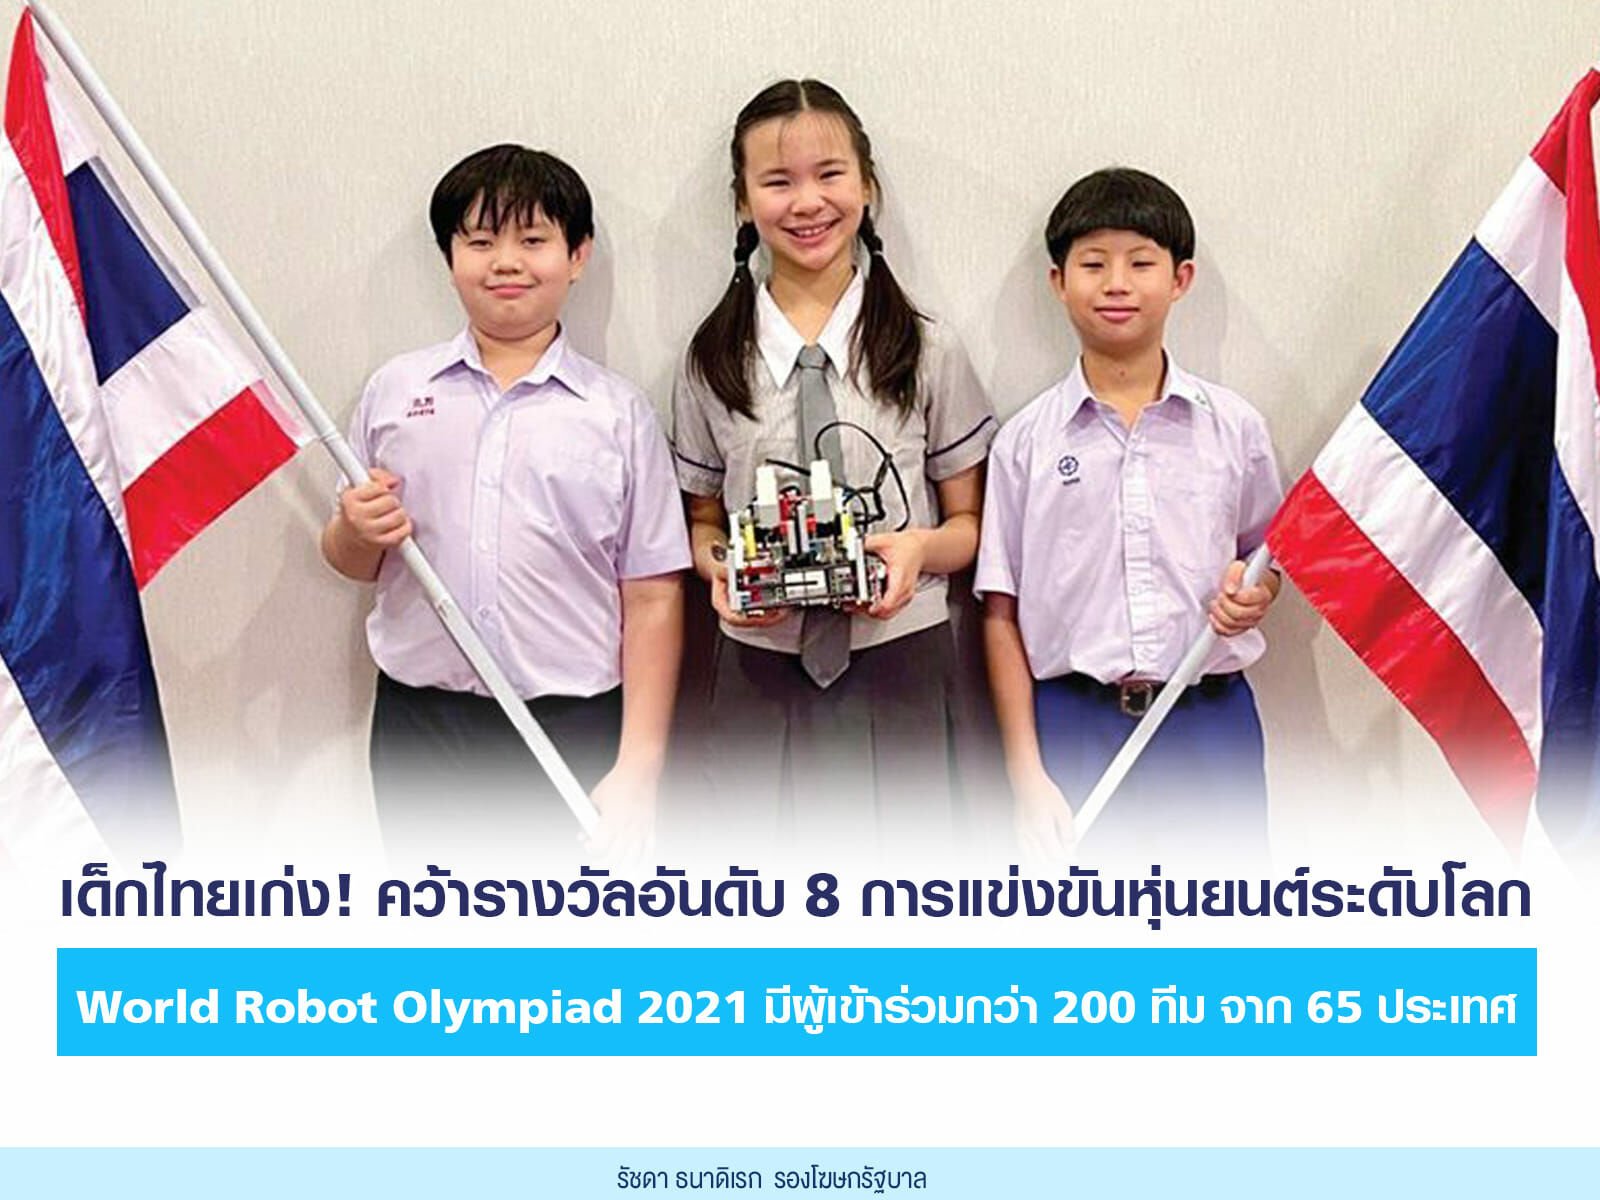 เด็กไทยผงาด คว้าอันดับ 8 เวทีแข่งหุ่นยนต์โลก World Robot Olympiad 2021 |  Thaiger ข่าวไทย